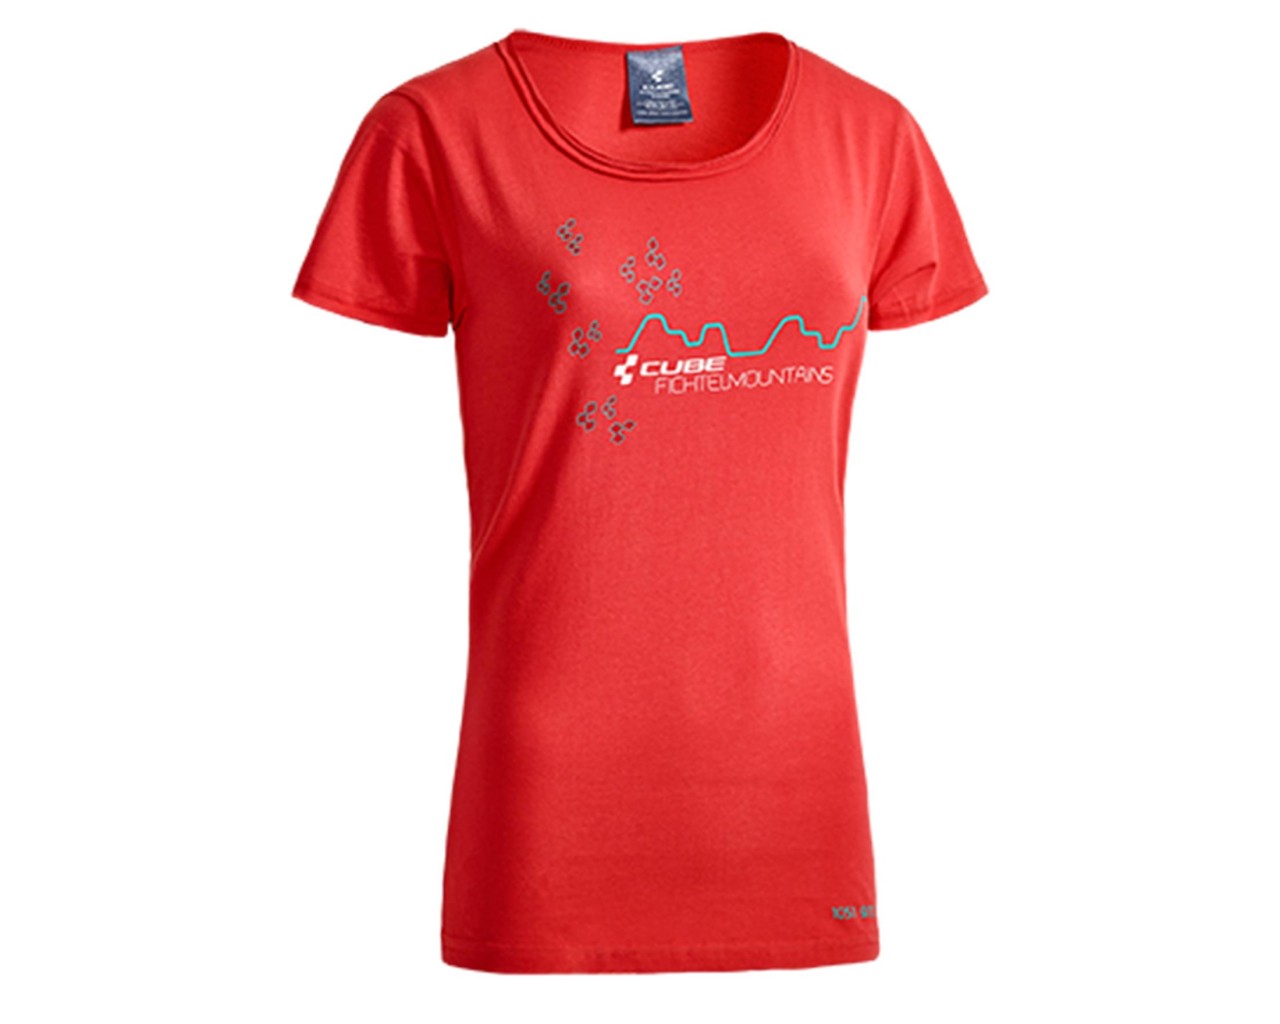 Cube WLS T-Shirt Fichtelmountains Woman After Race | red